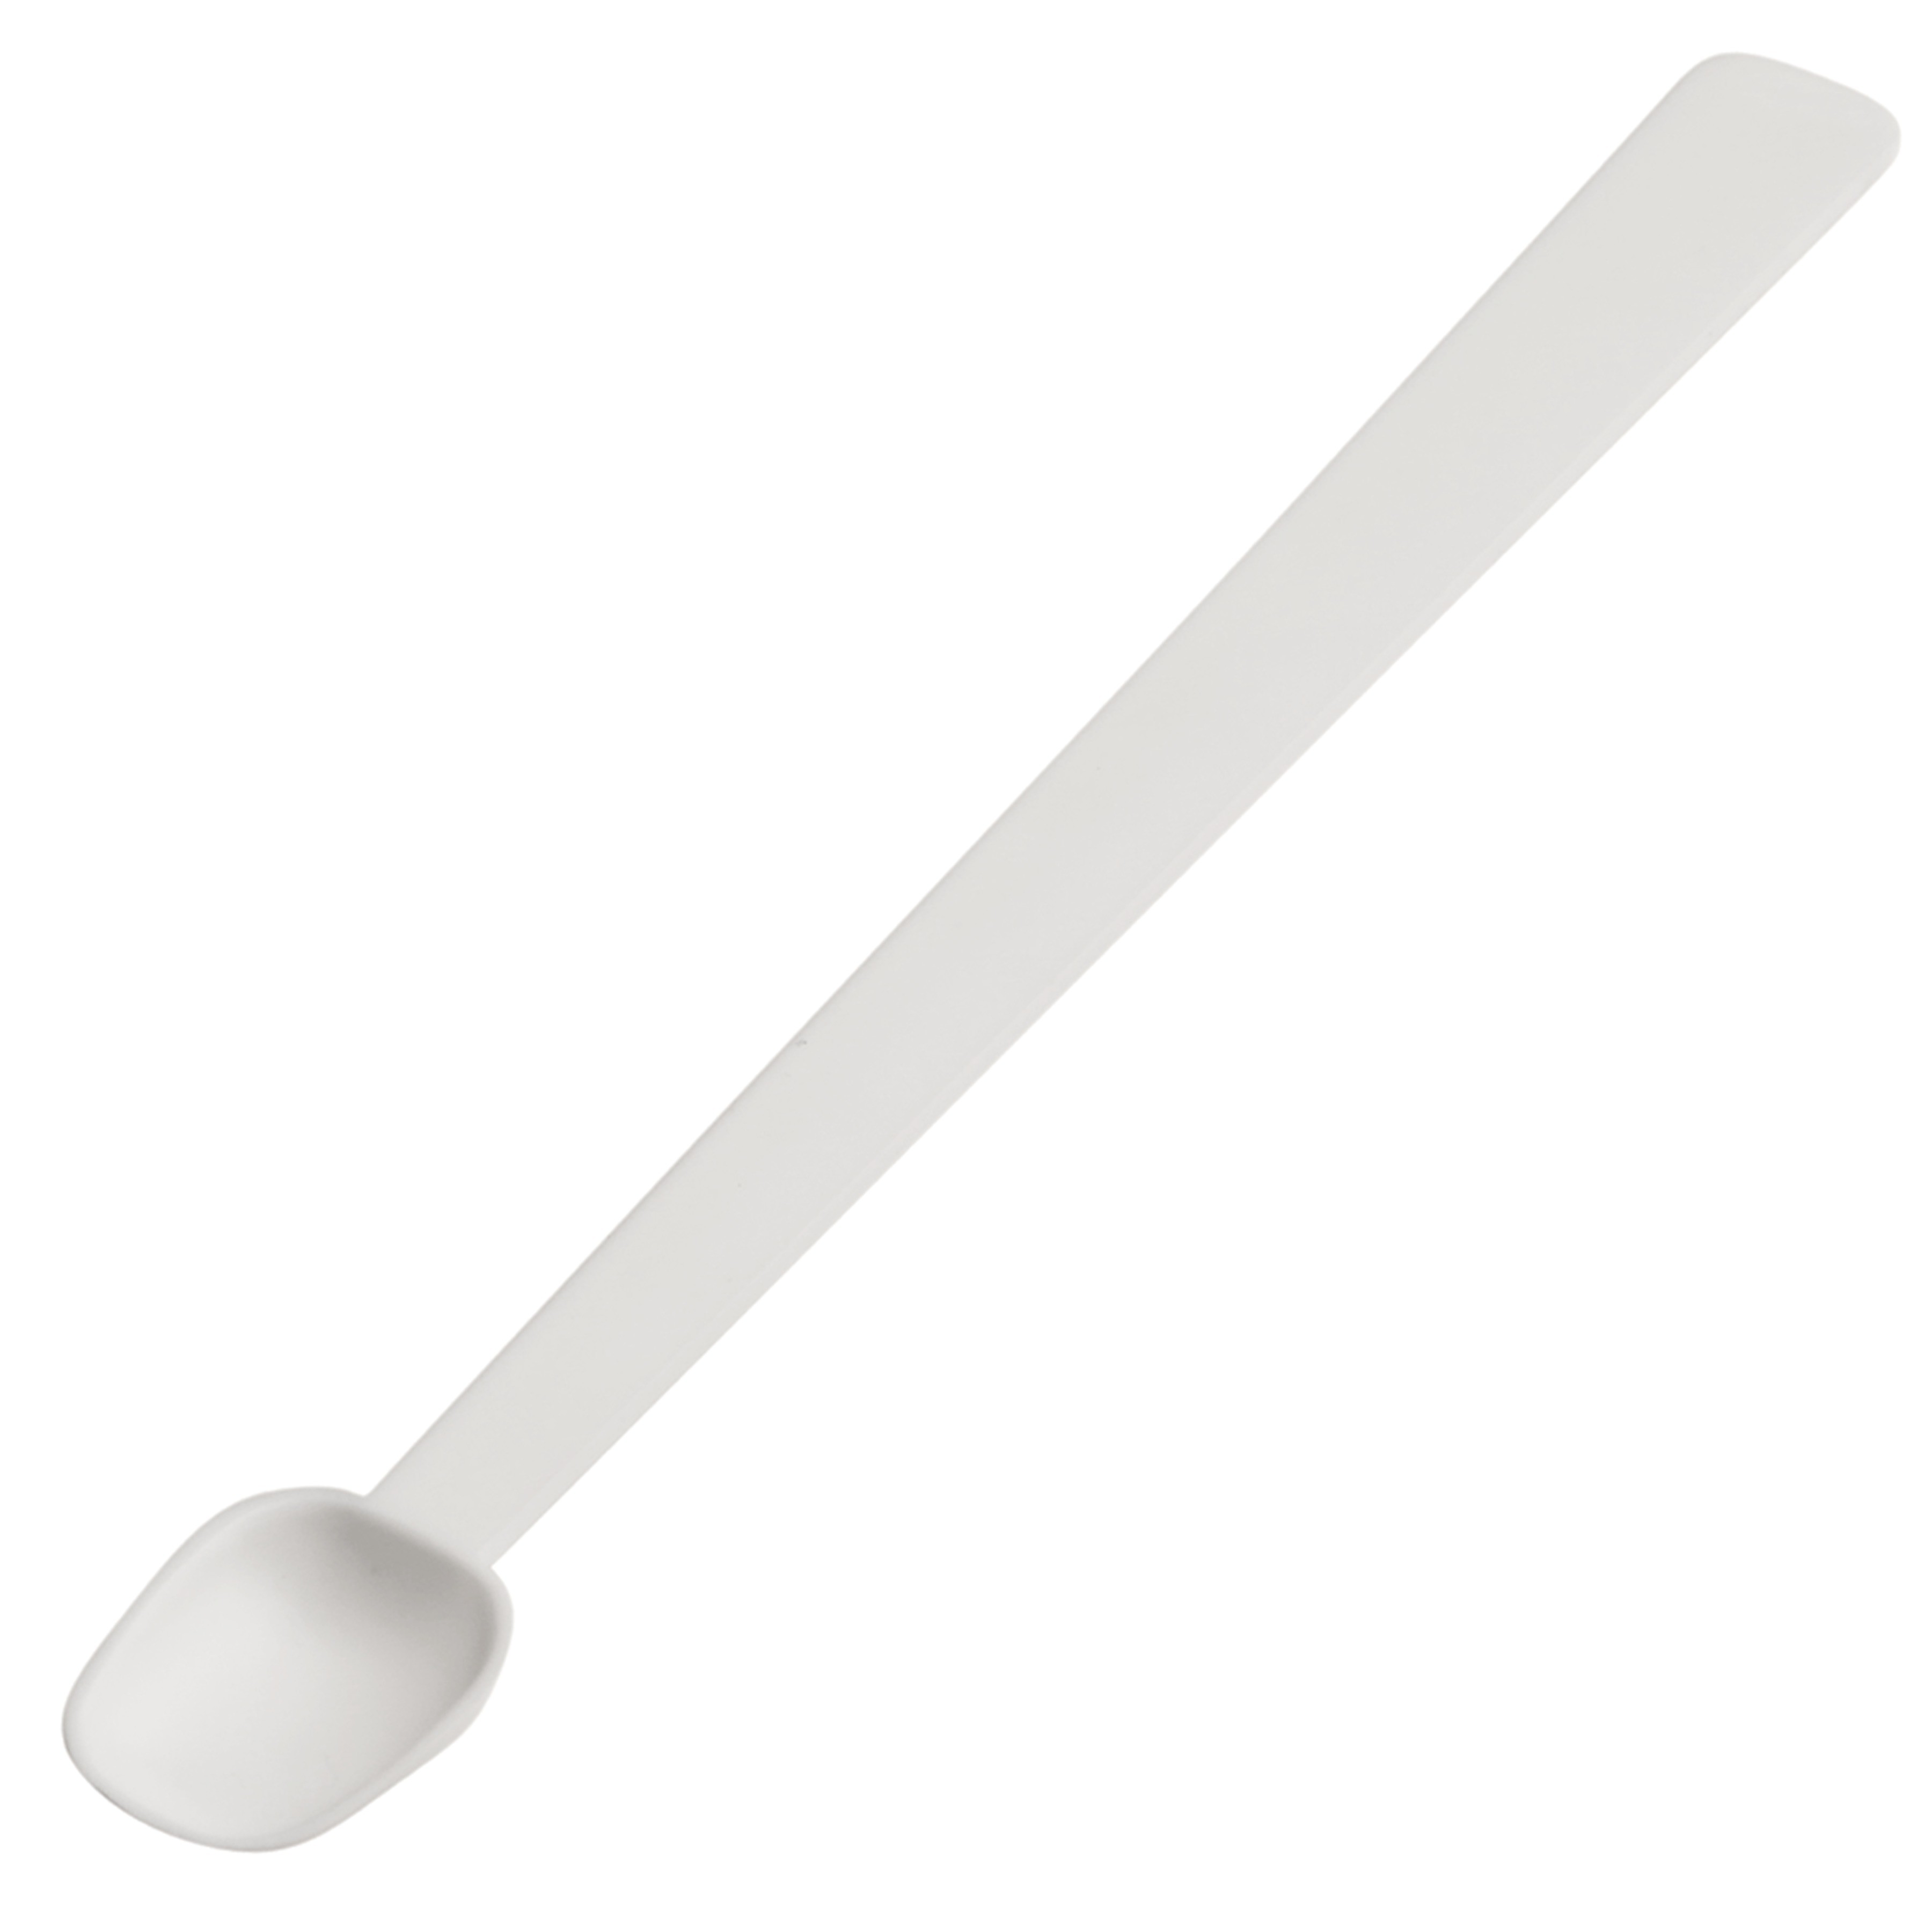 SP Bel-Art Long Handle Sampling Spoon; 1.23ml (¼tsp), Non-Sterile Plastic (Pack of 12)